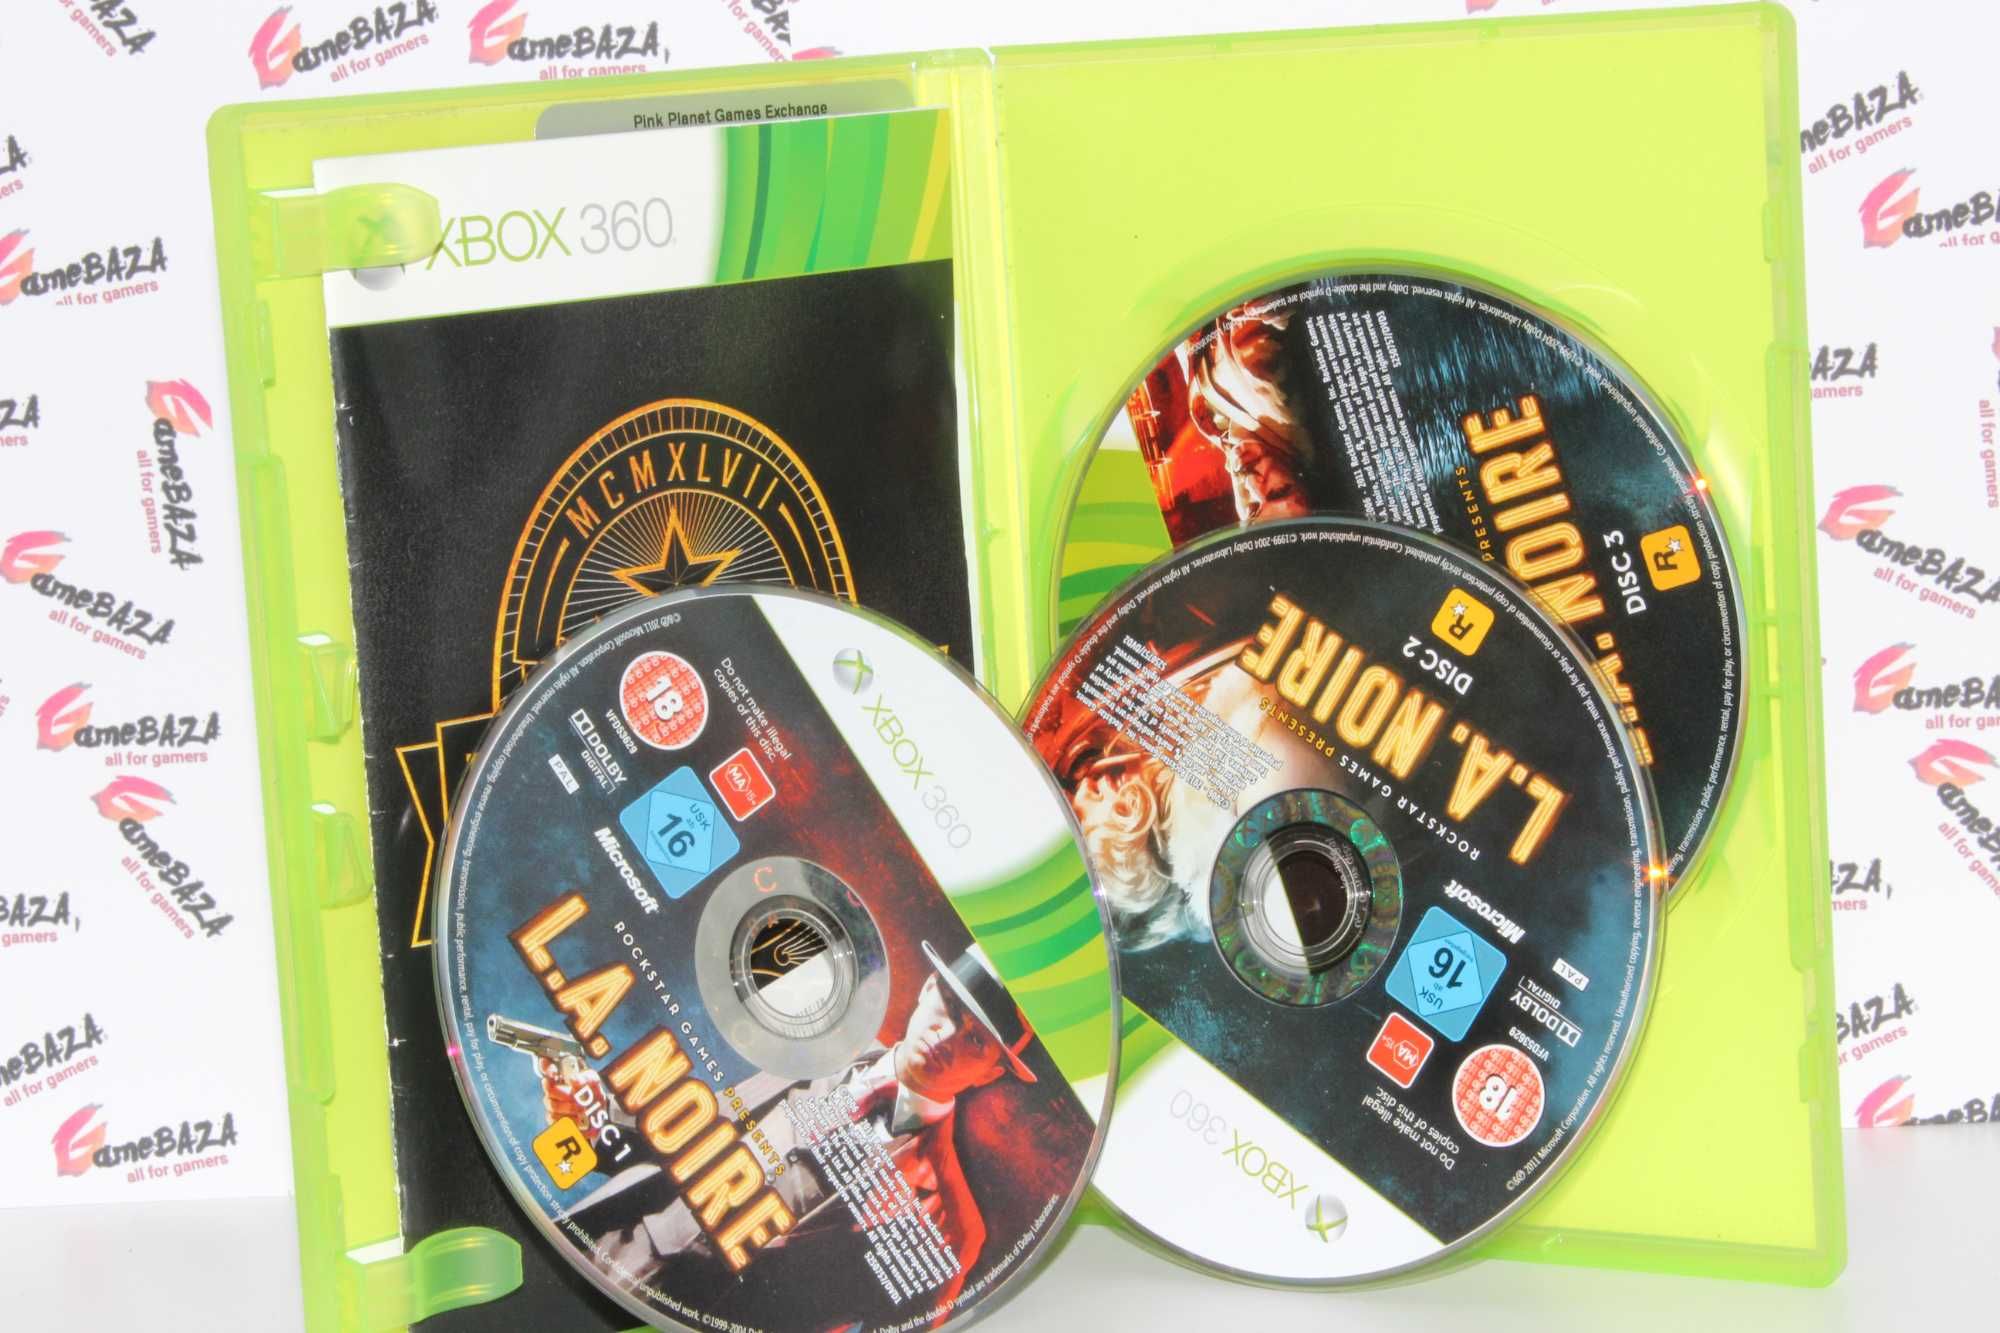 LA NOIRE Xbox 360 GameBAZA